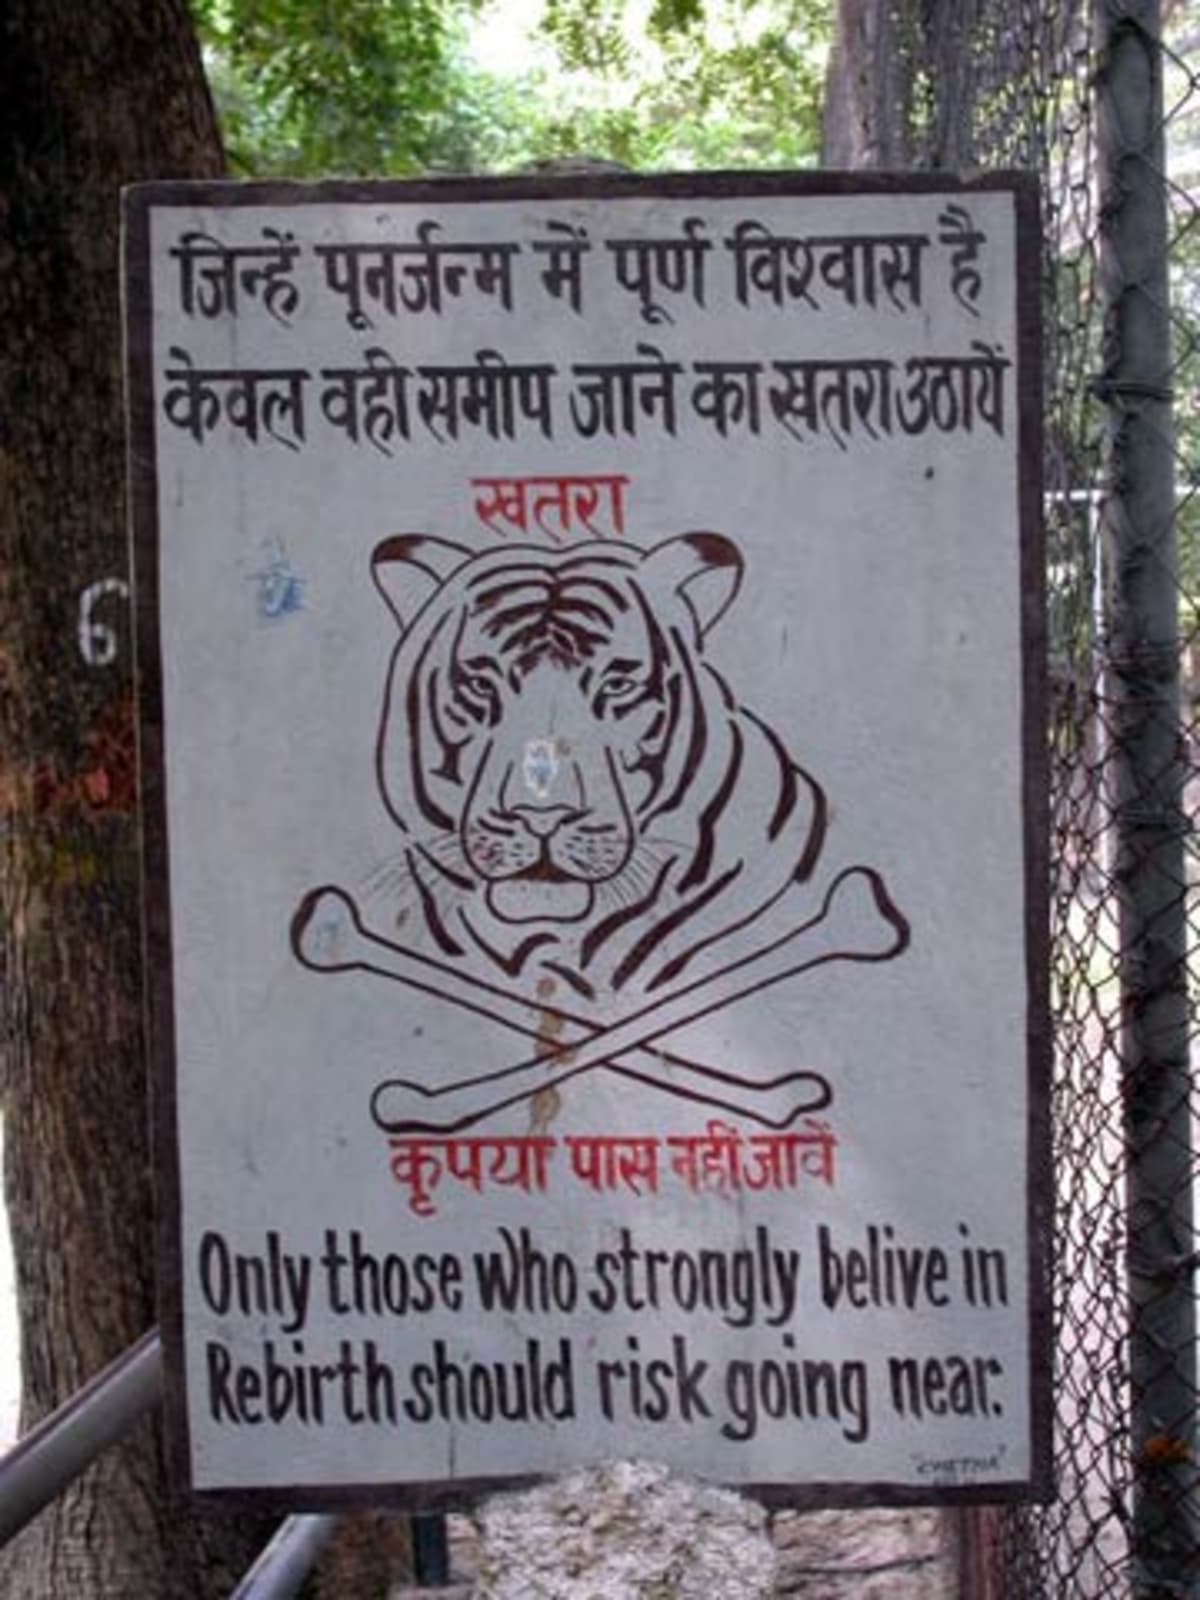 Geniální varování: "K tygrům by se měli přibližovat jen ti, kdo věří v reinkarnaci"